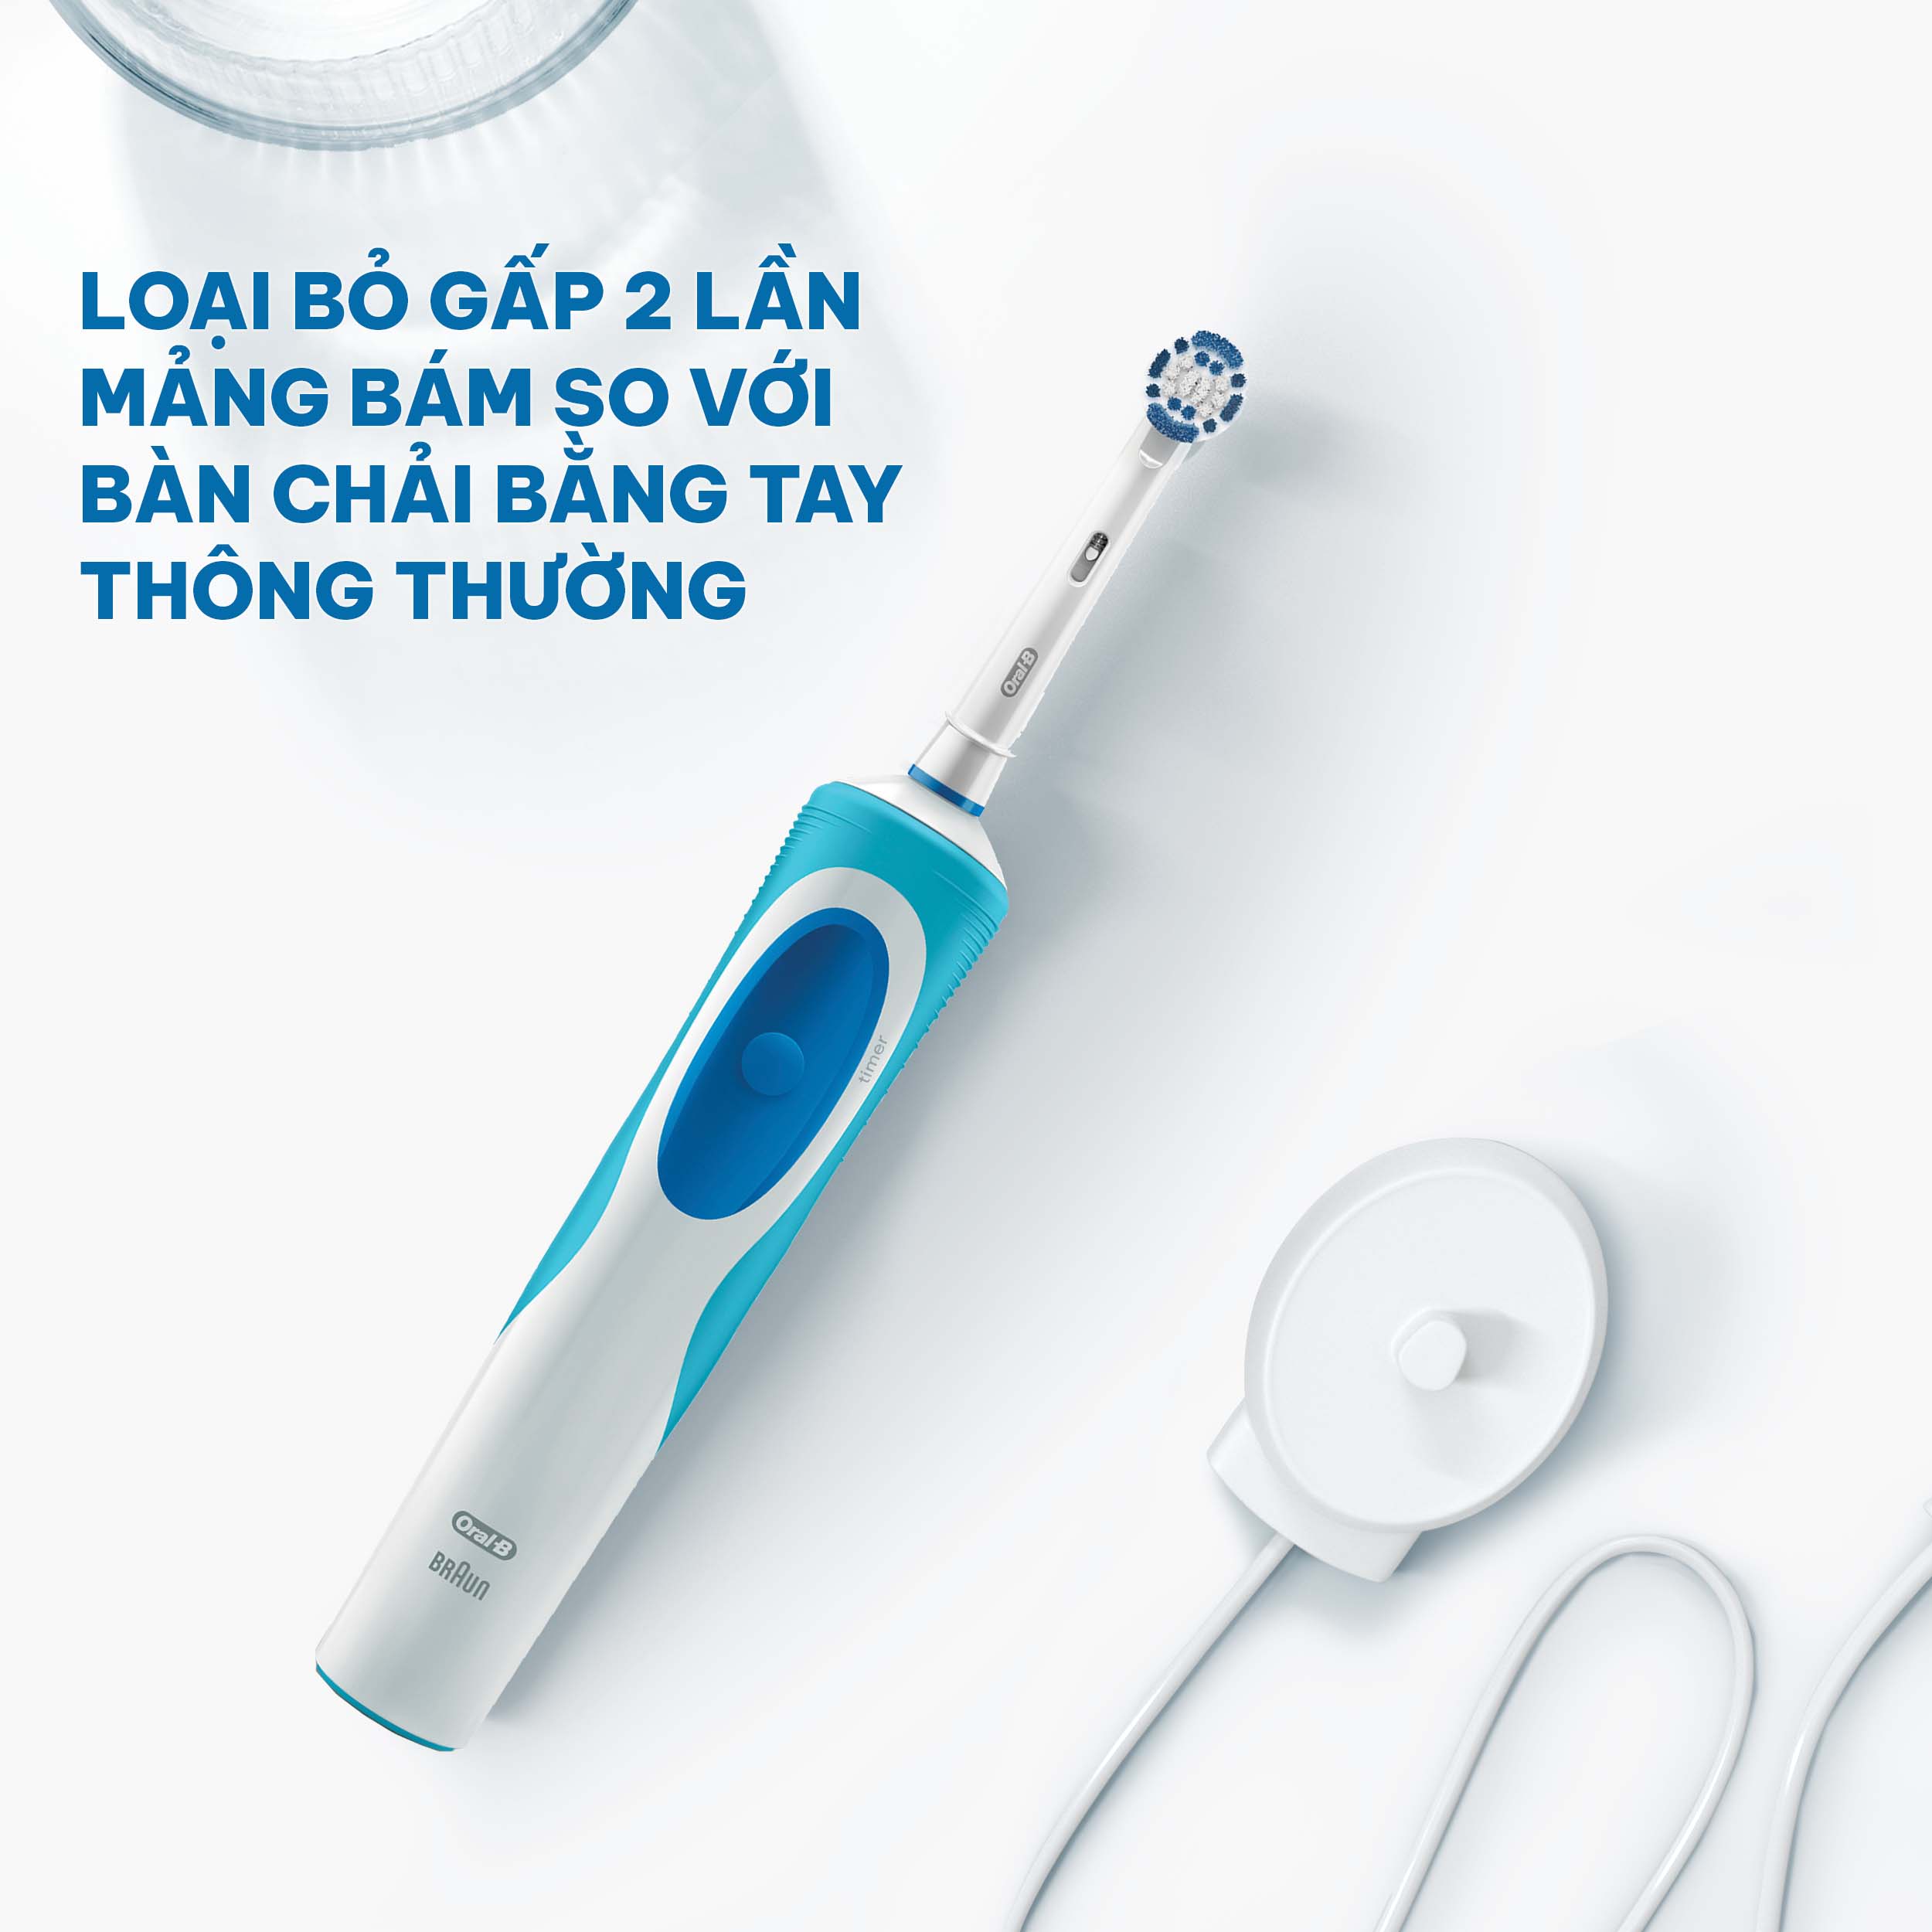 Bàn chải đánh răng điện Oral-B Vitality Precision Clean Blue D12.513- Hàng chính hãng 100%